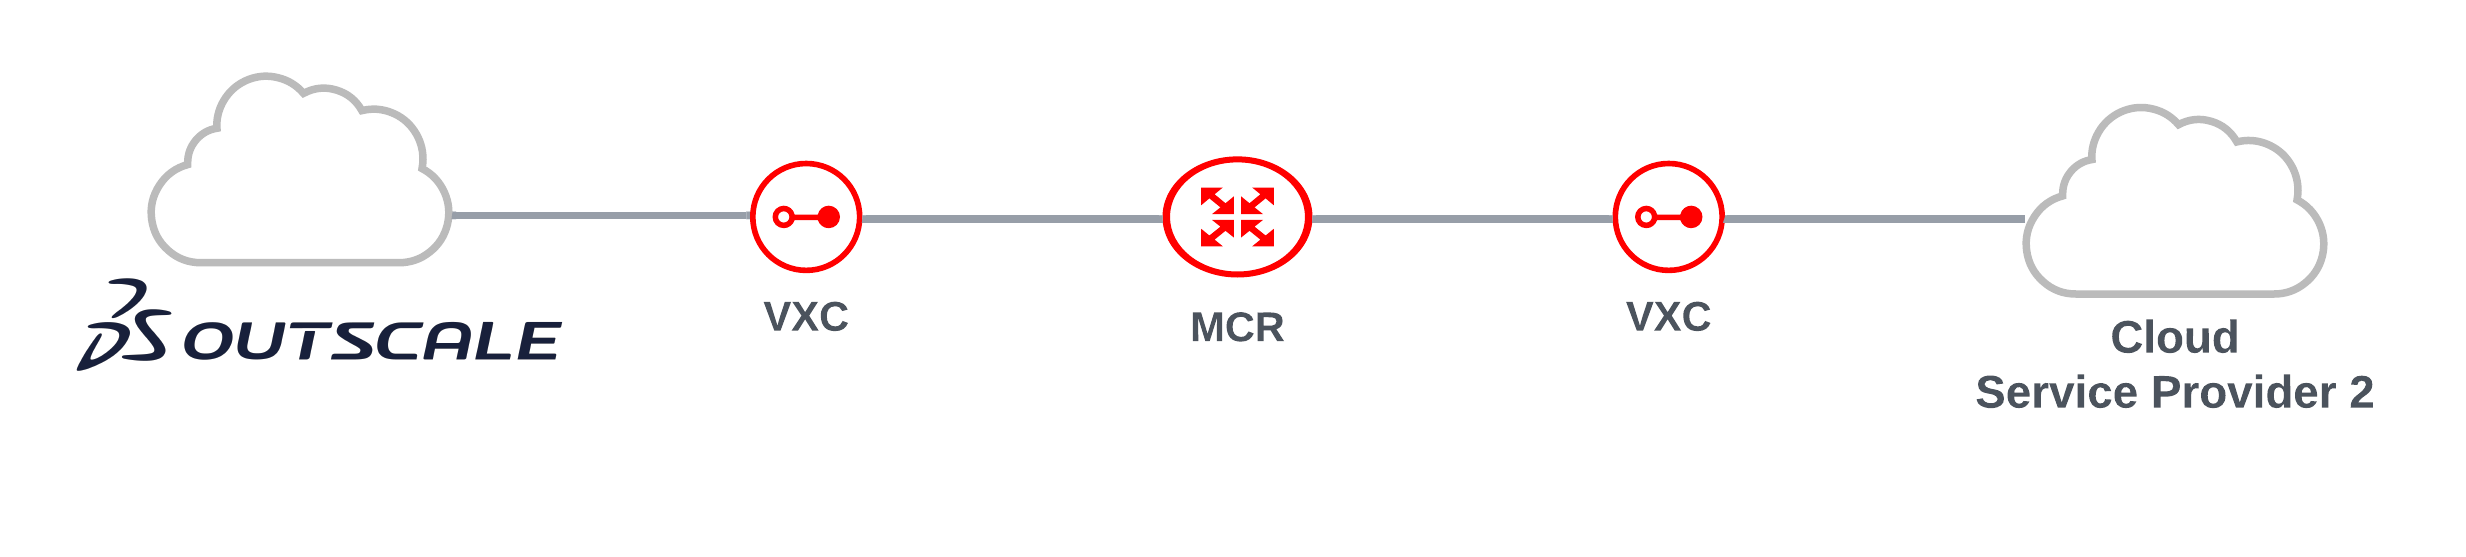 Implementación de Outscale con MCR